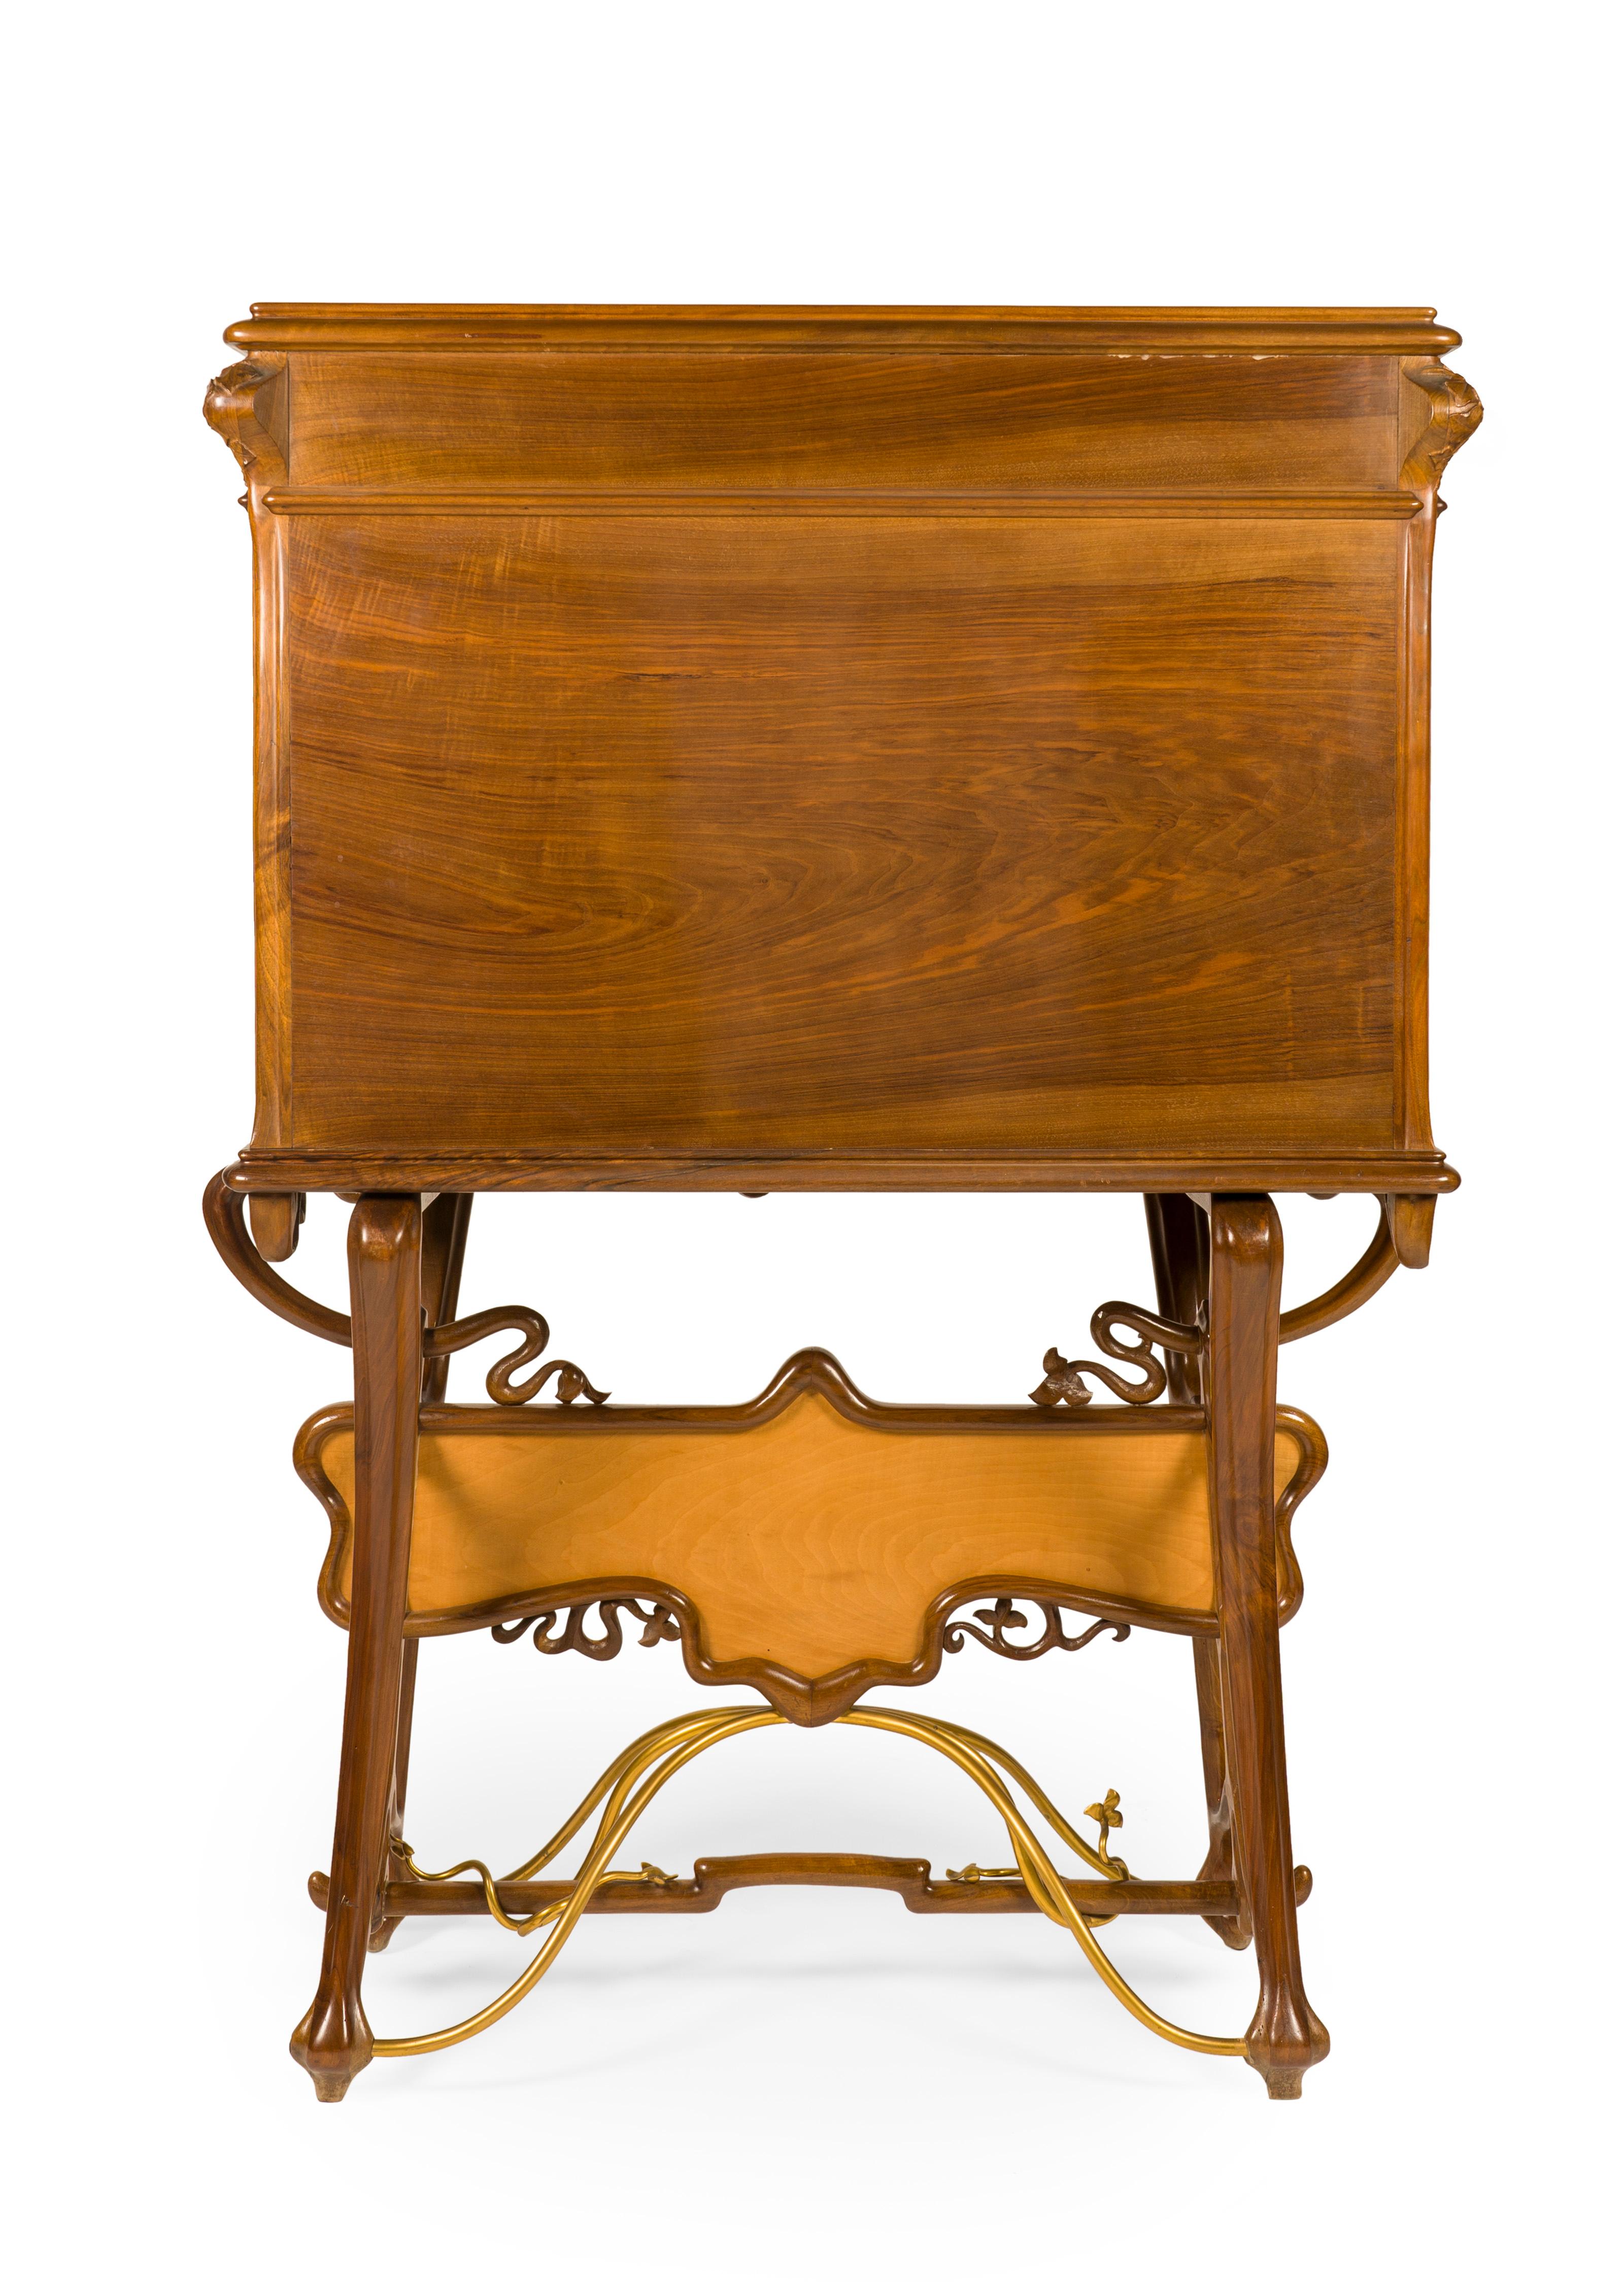 Joan Busquets Workshop Masterpiece Modernist Nouveau Desk Cabinet, ca. 1898 For Sale 3